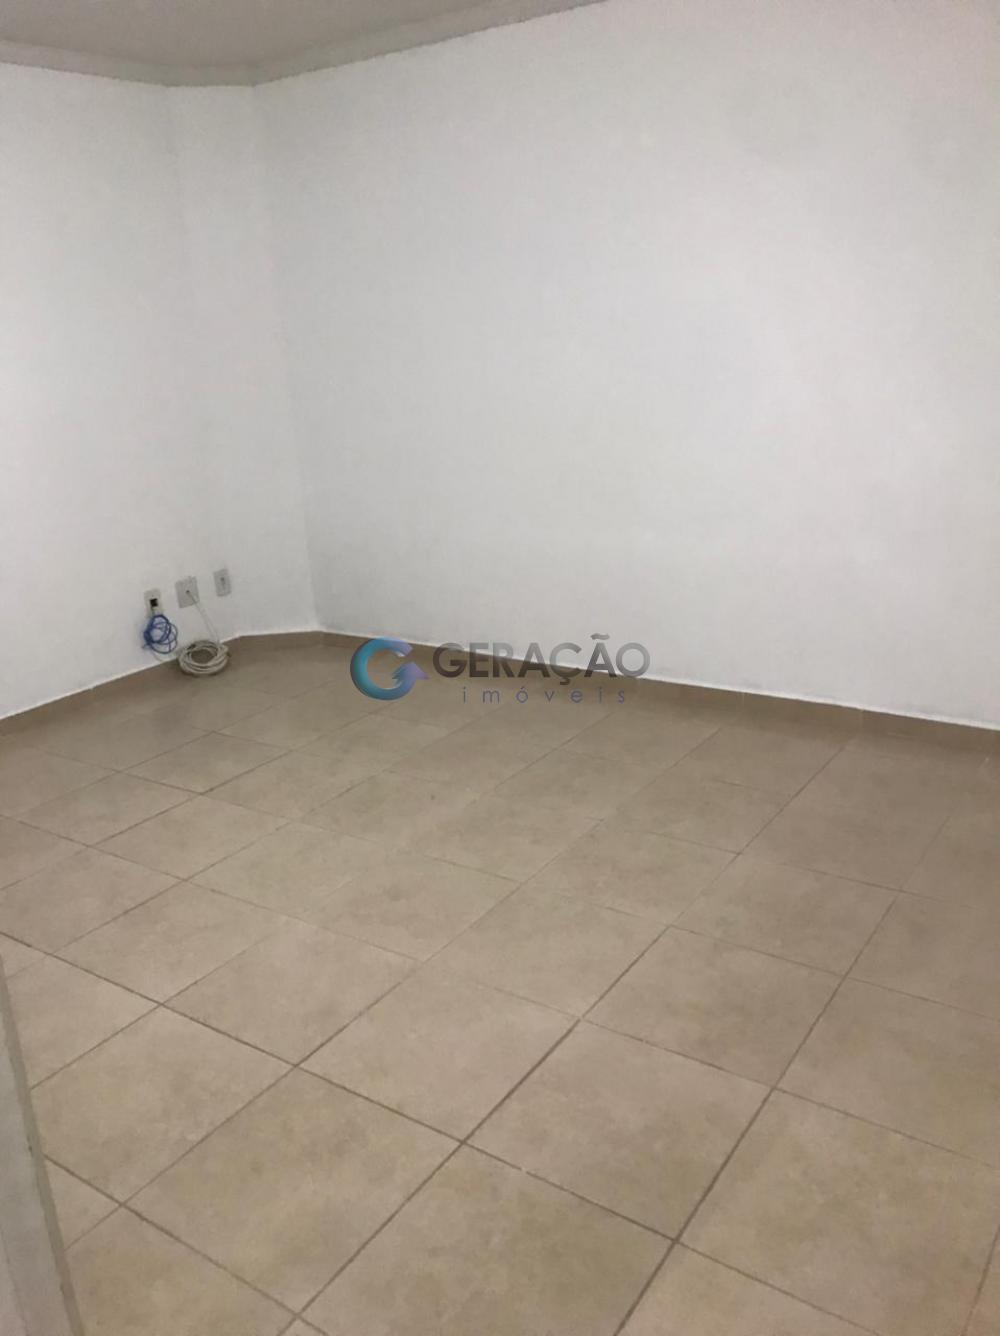 Comprar Apartamento / Cobertura em São José dos Campos R$ 385.000,00 - Foto 10